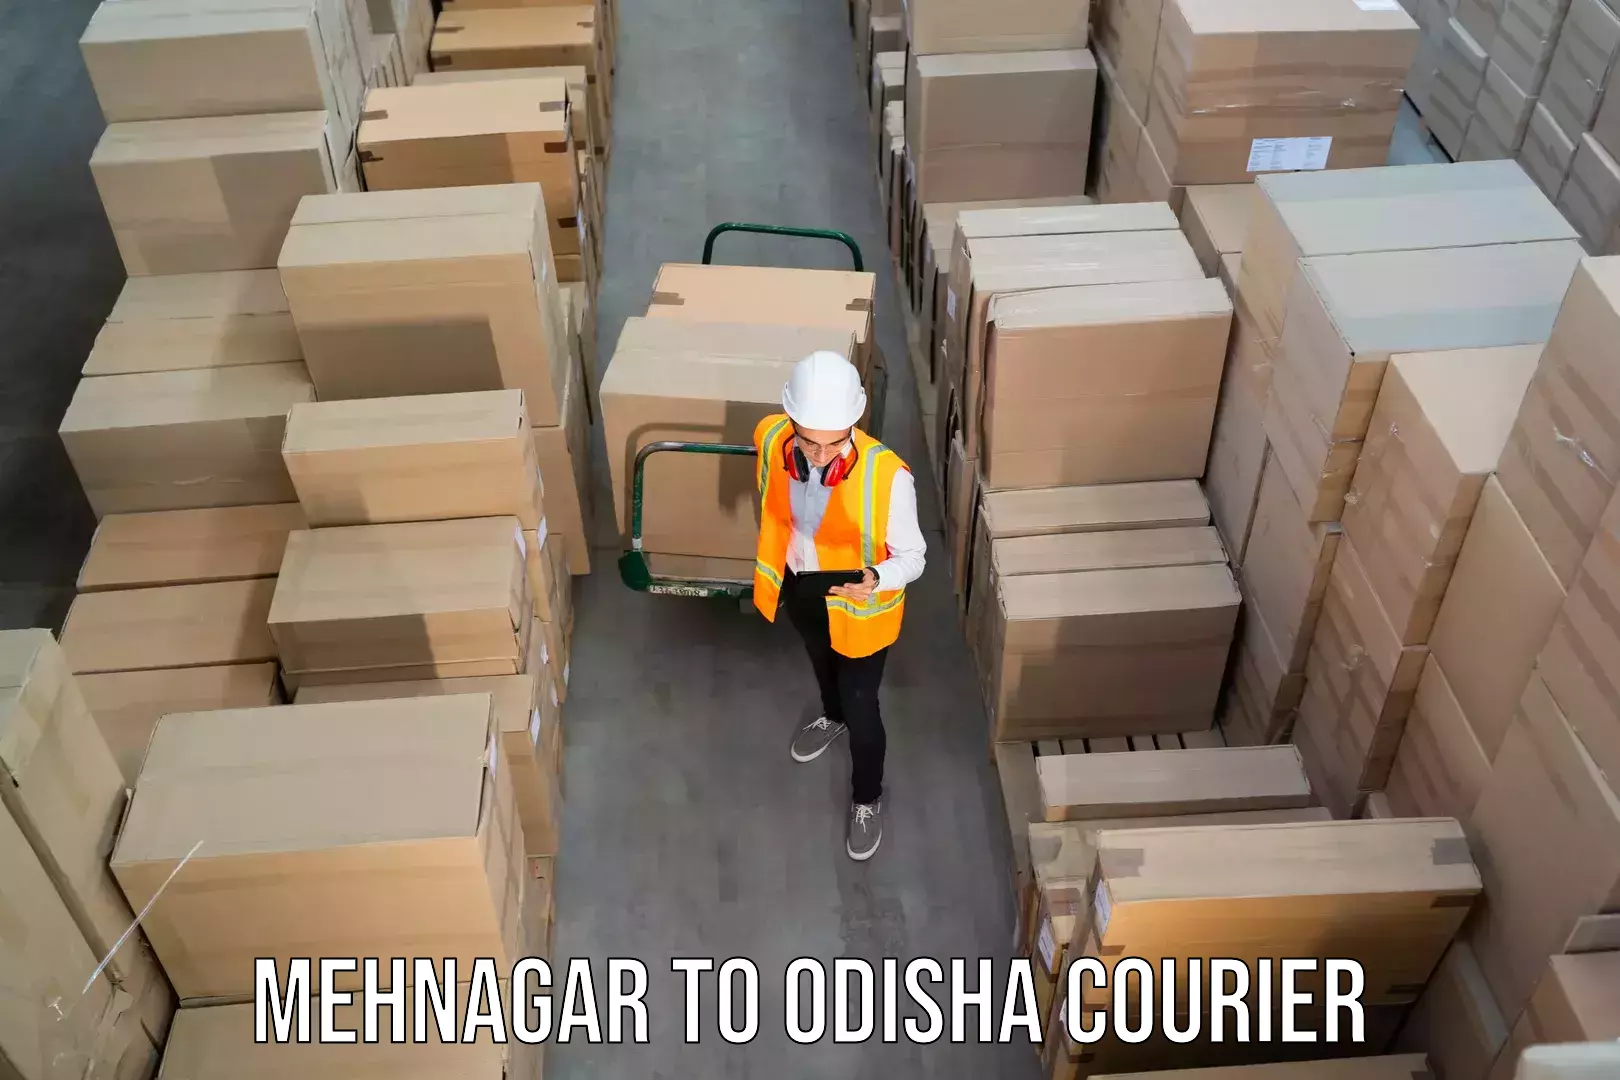 Reliable parcel services Mehnagar to Kishorenagar